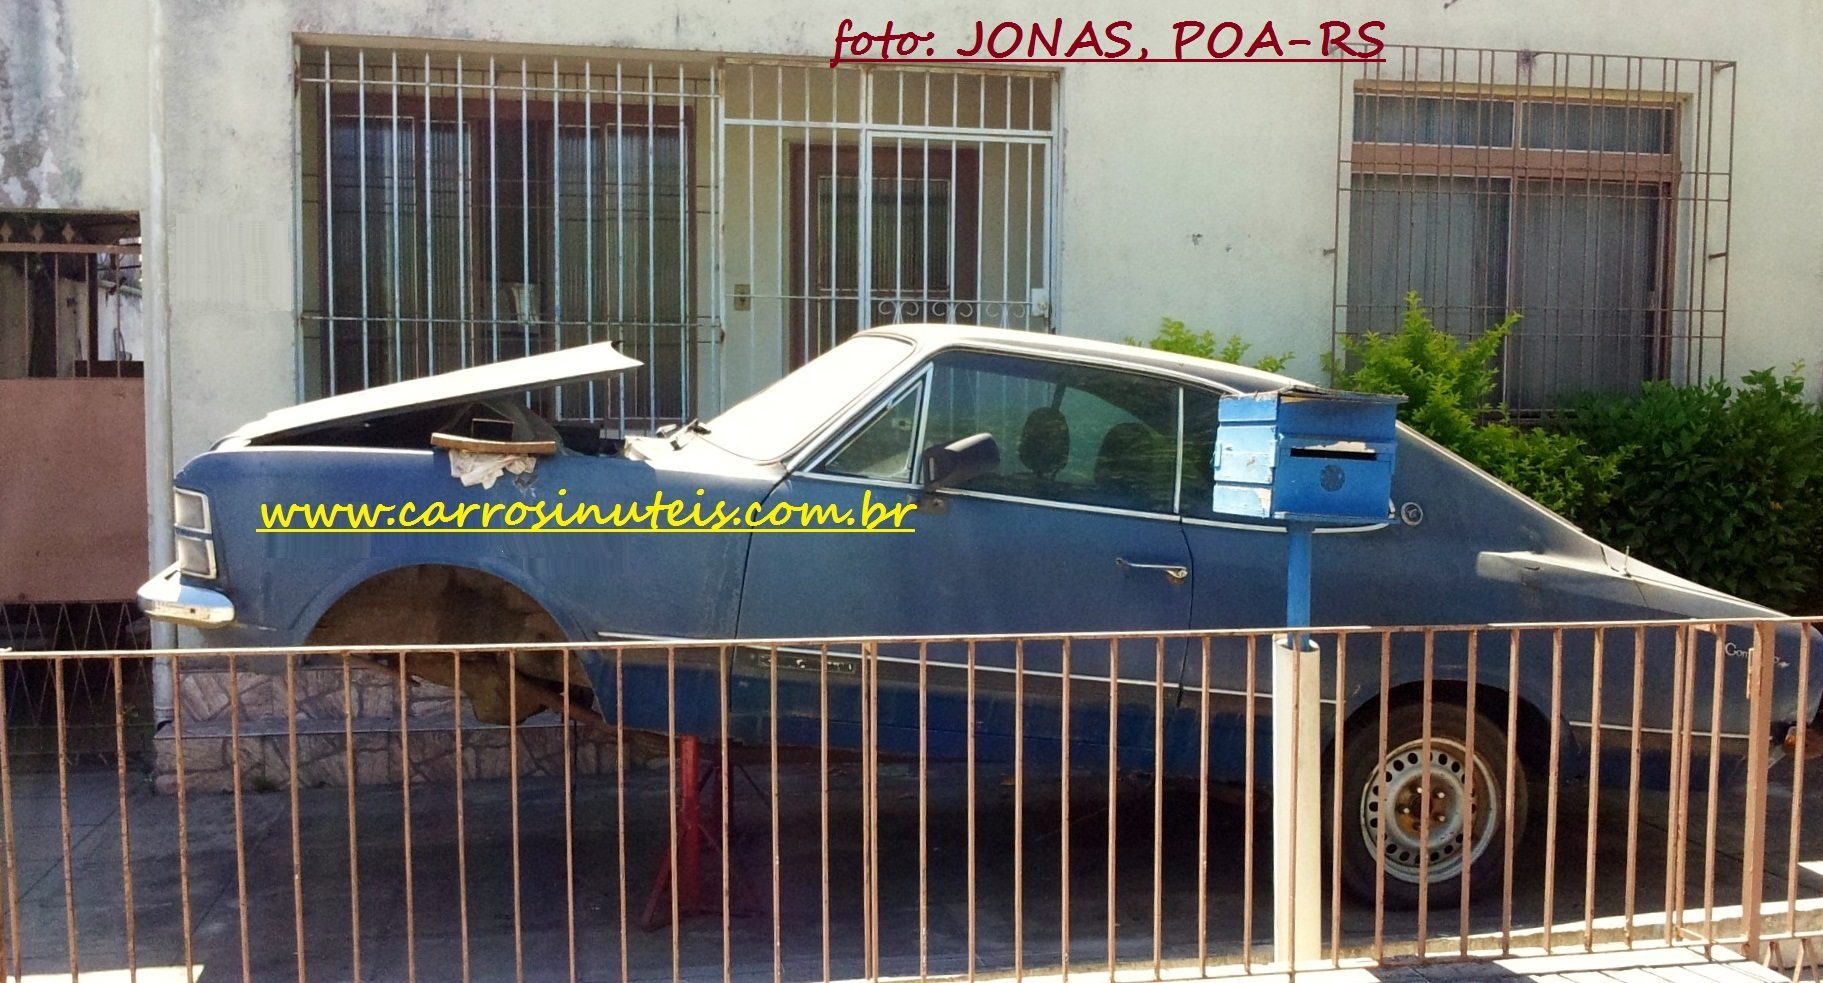 Chevrolet Opala, Jonas, POA-RS